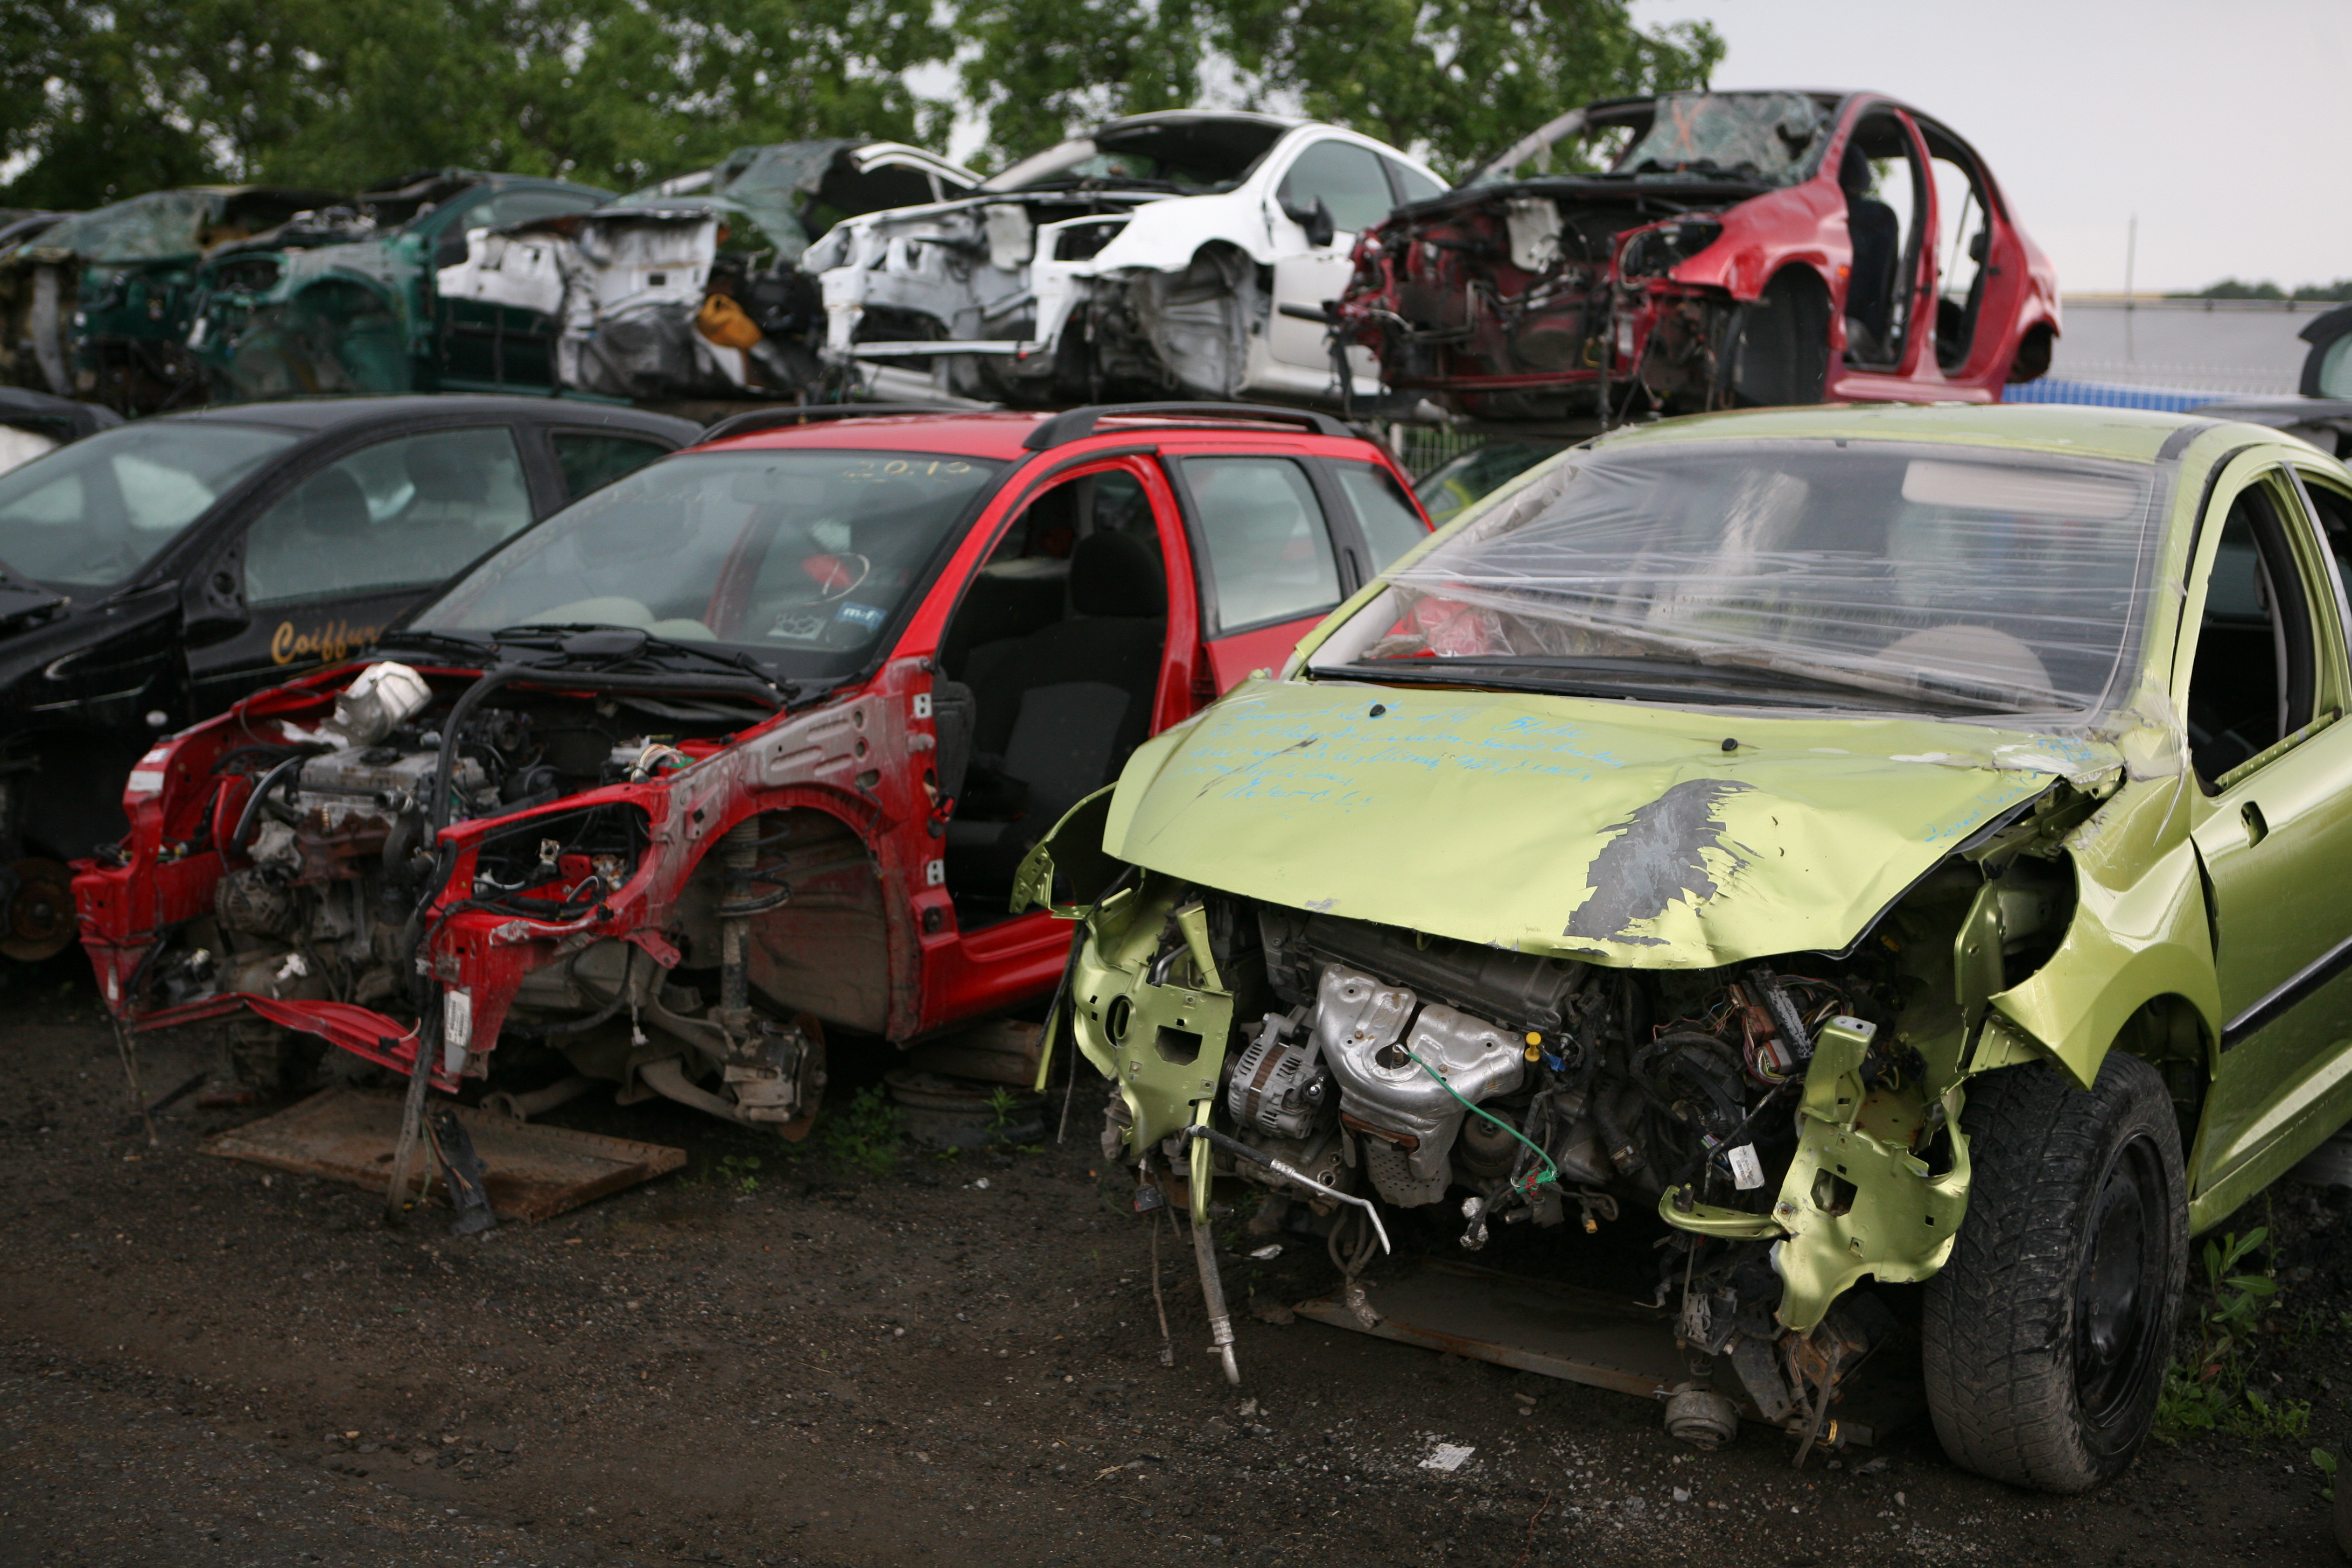 File:Scrap car bodies.jpg - Wikipedia